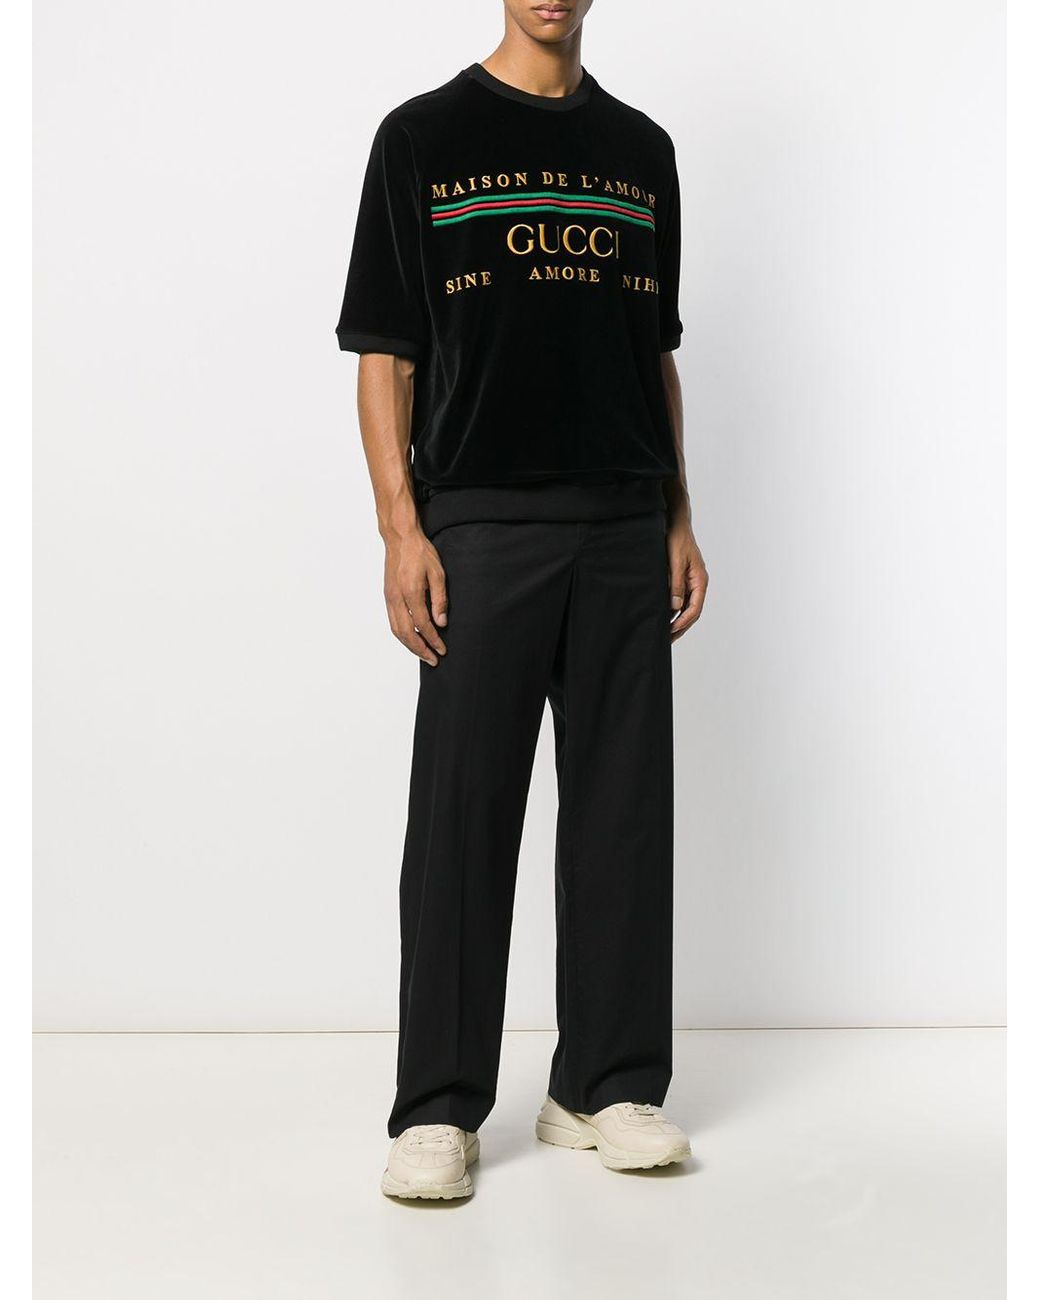 Gucci Velvet Maison De L'amour T-shirt in Black for Men | Lyst